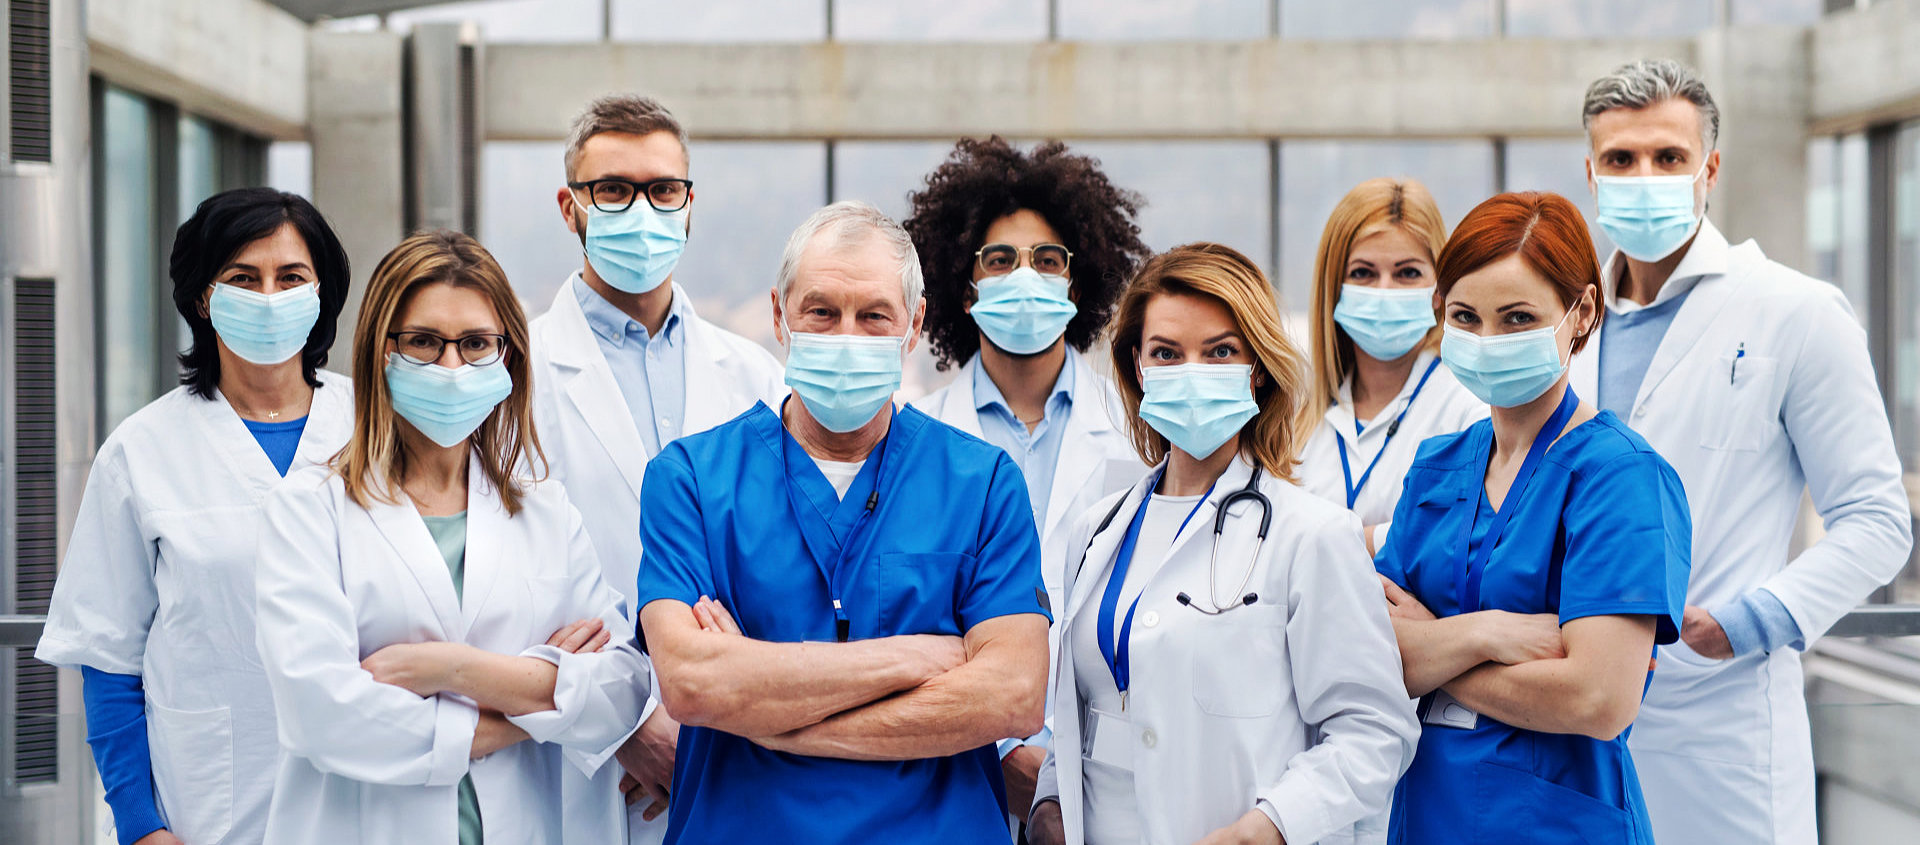 nine medical workers